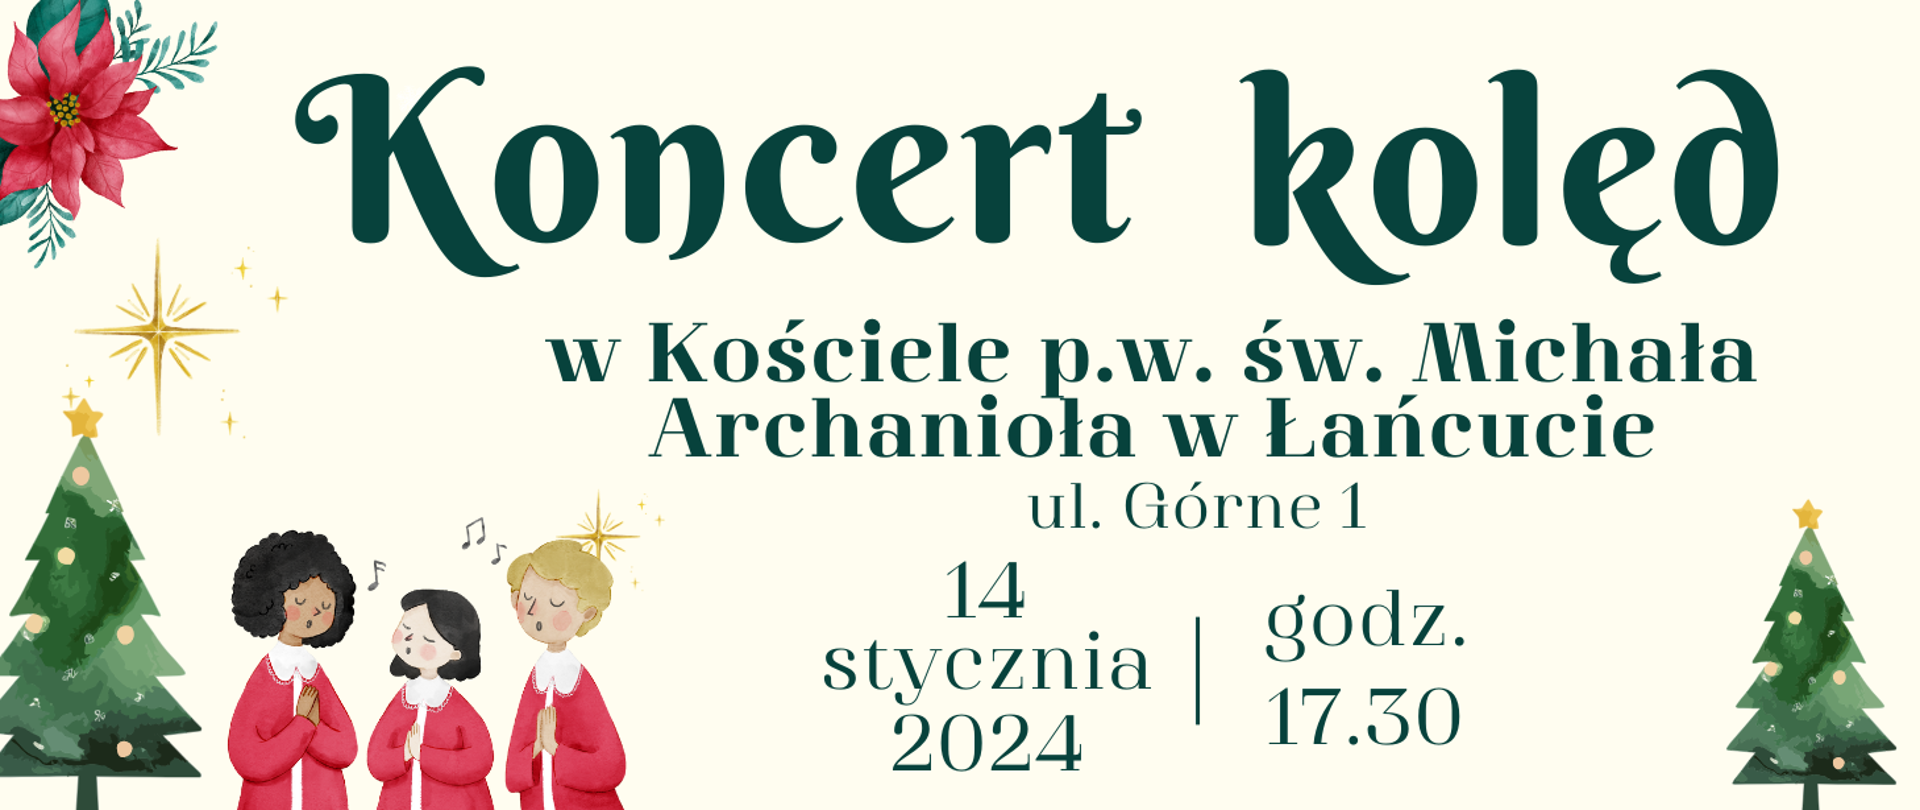 Plakat, ogłoszenie o koncercie kolęd w Kościele p. w. św. Michała Archanioła w Łańcucie 14 stycznia 24 godz. 17.30